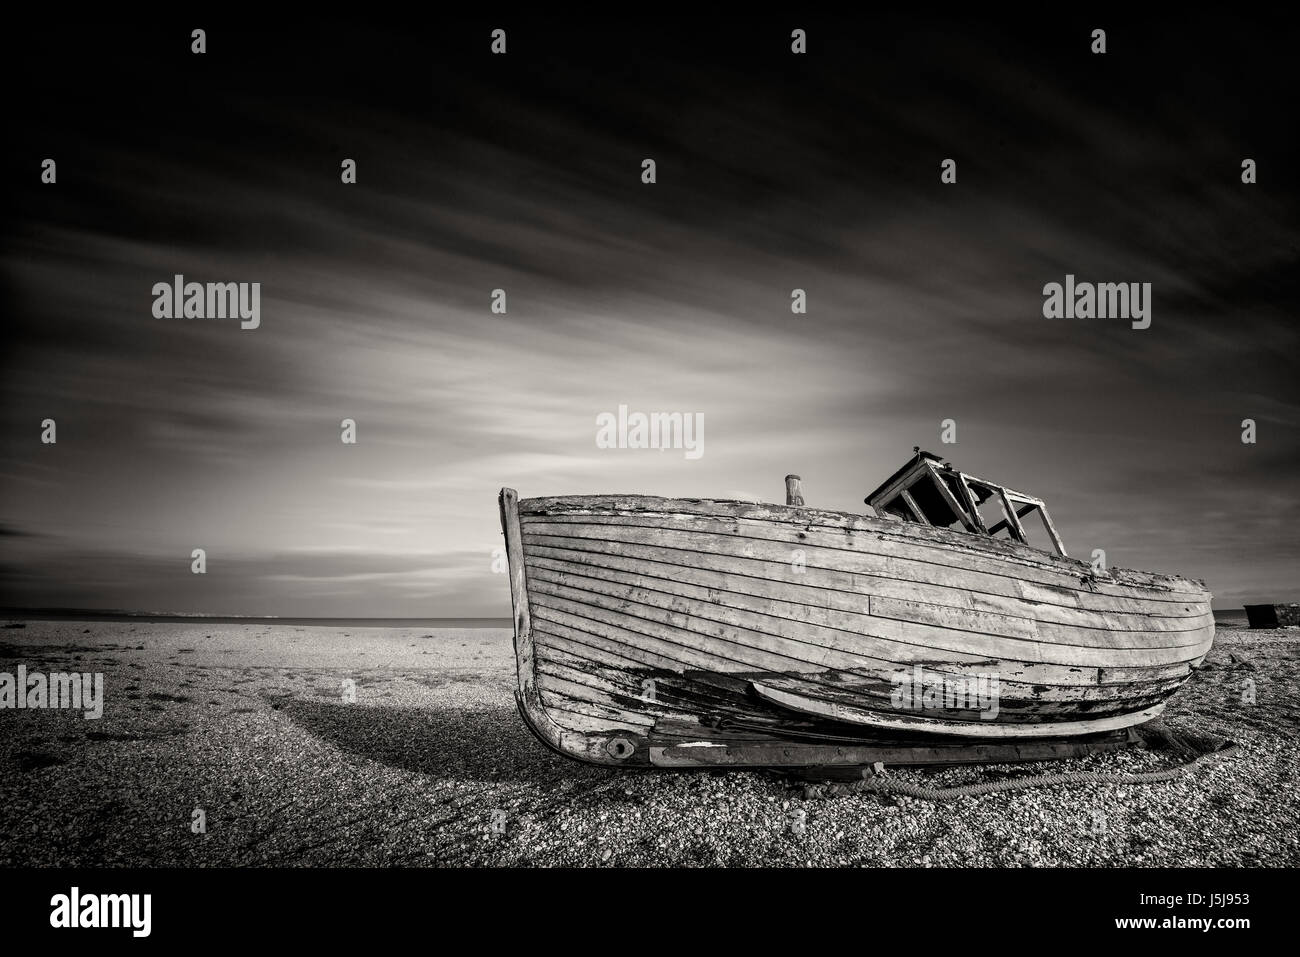 Unico abbandonato vecchie barche da pesca sulla spiaggia di ghiaia in monocromatico. Dungeness, Inghilterra Foto Stock